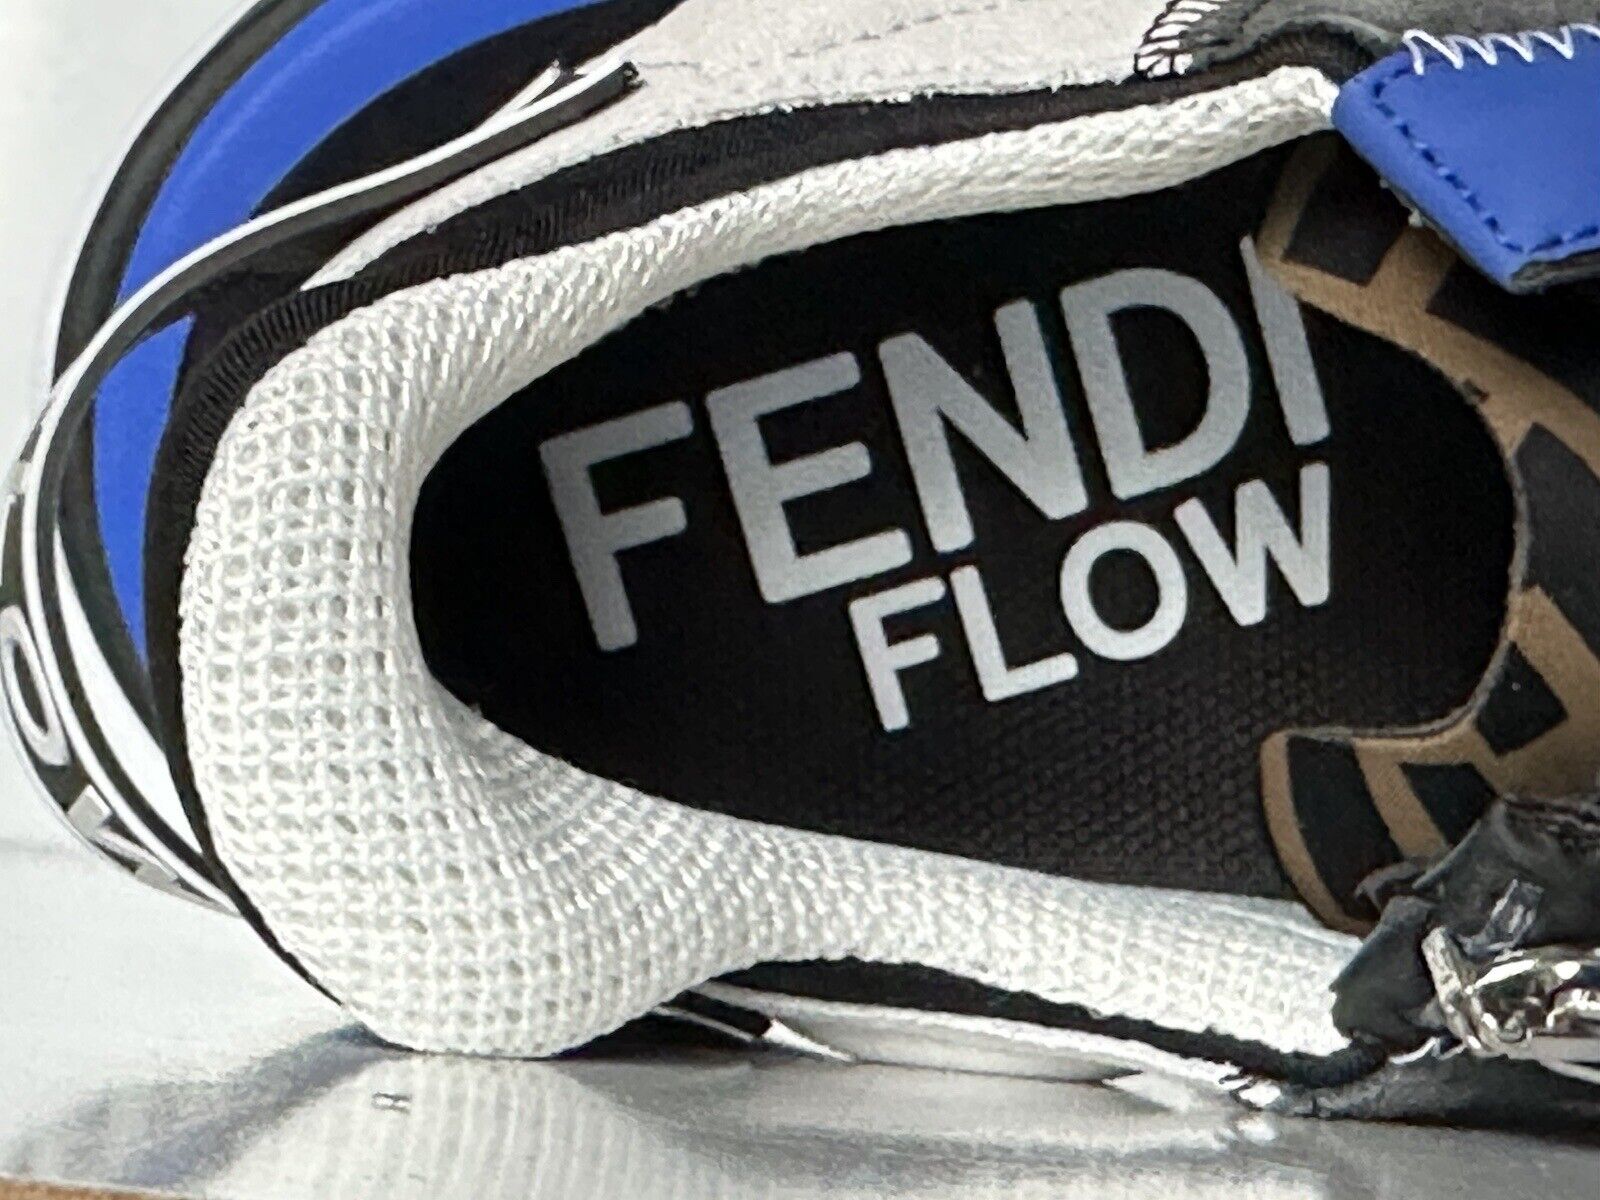 NIB $930 Мужские кроссовки Fendi Flow из кожи/ткани черные/синие 11 US (44) 7E1392